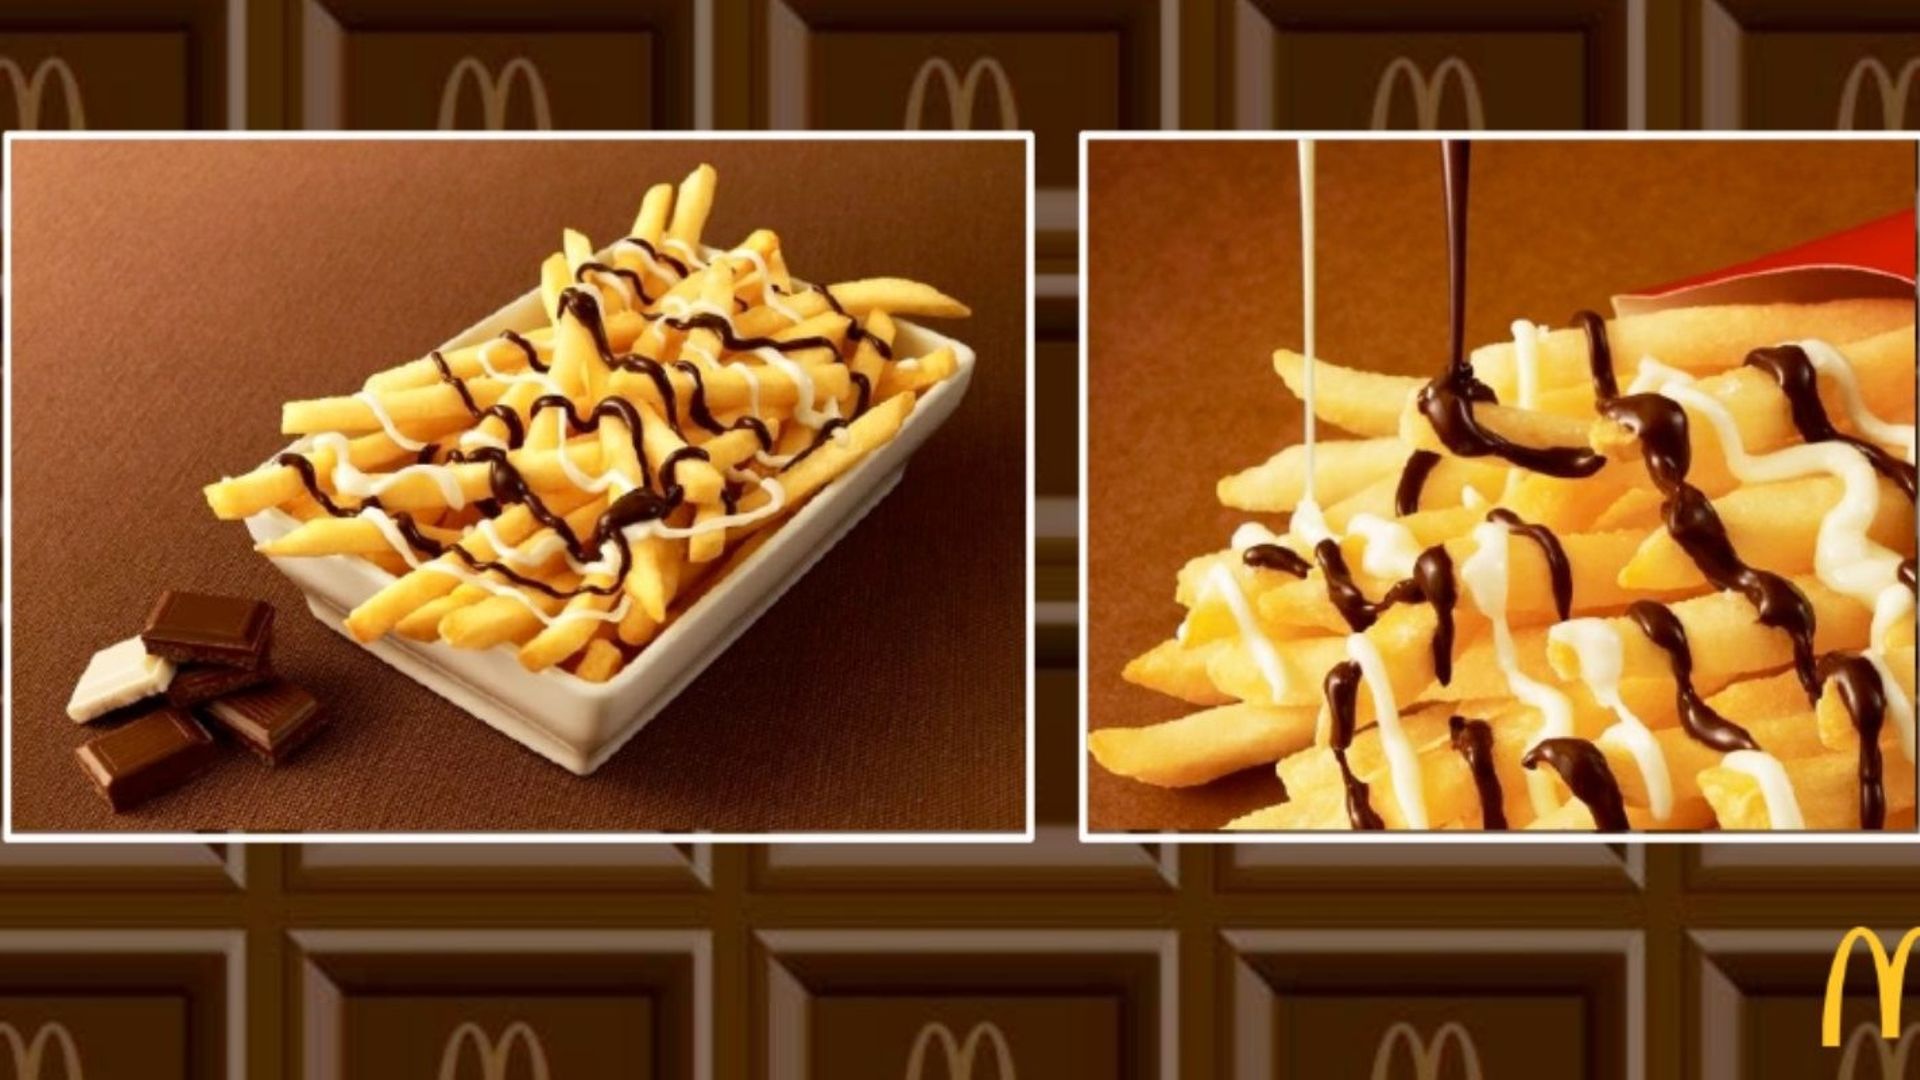 On se souvient des frites nappées de sauce chocolat lancées par McDonald's au Japon en 2016